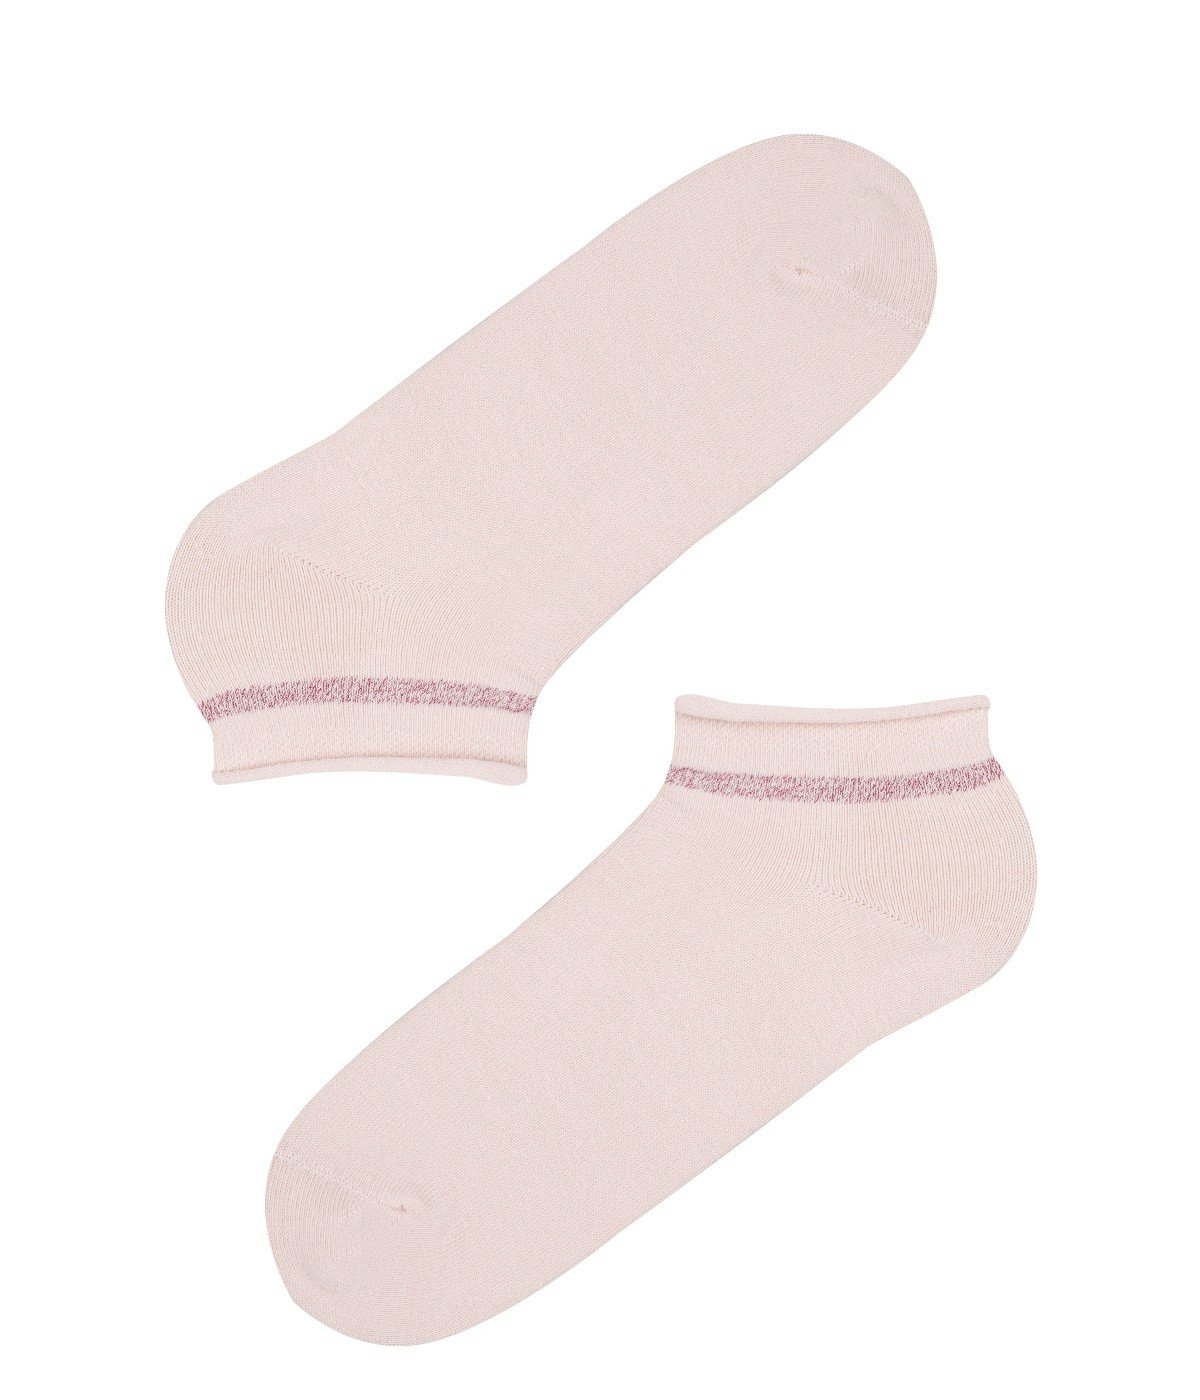 Cara 2 in 1 Liner Socks